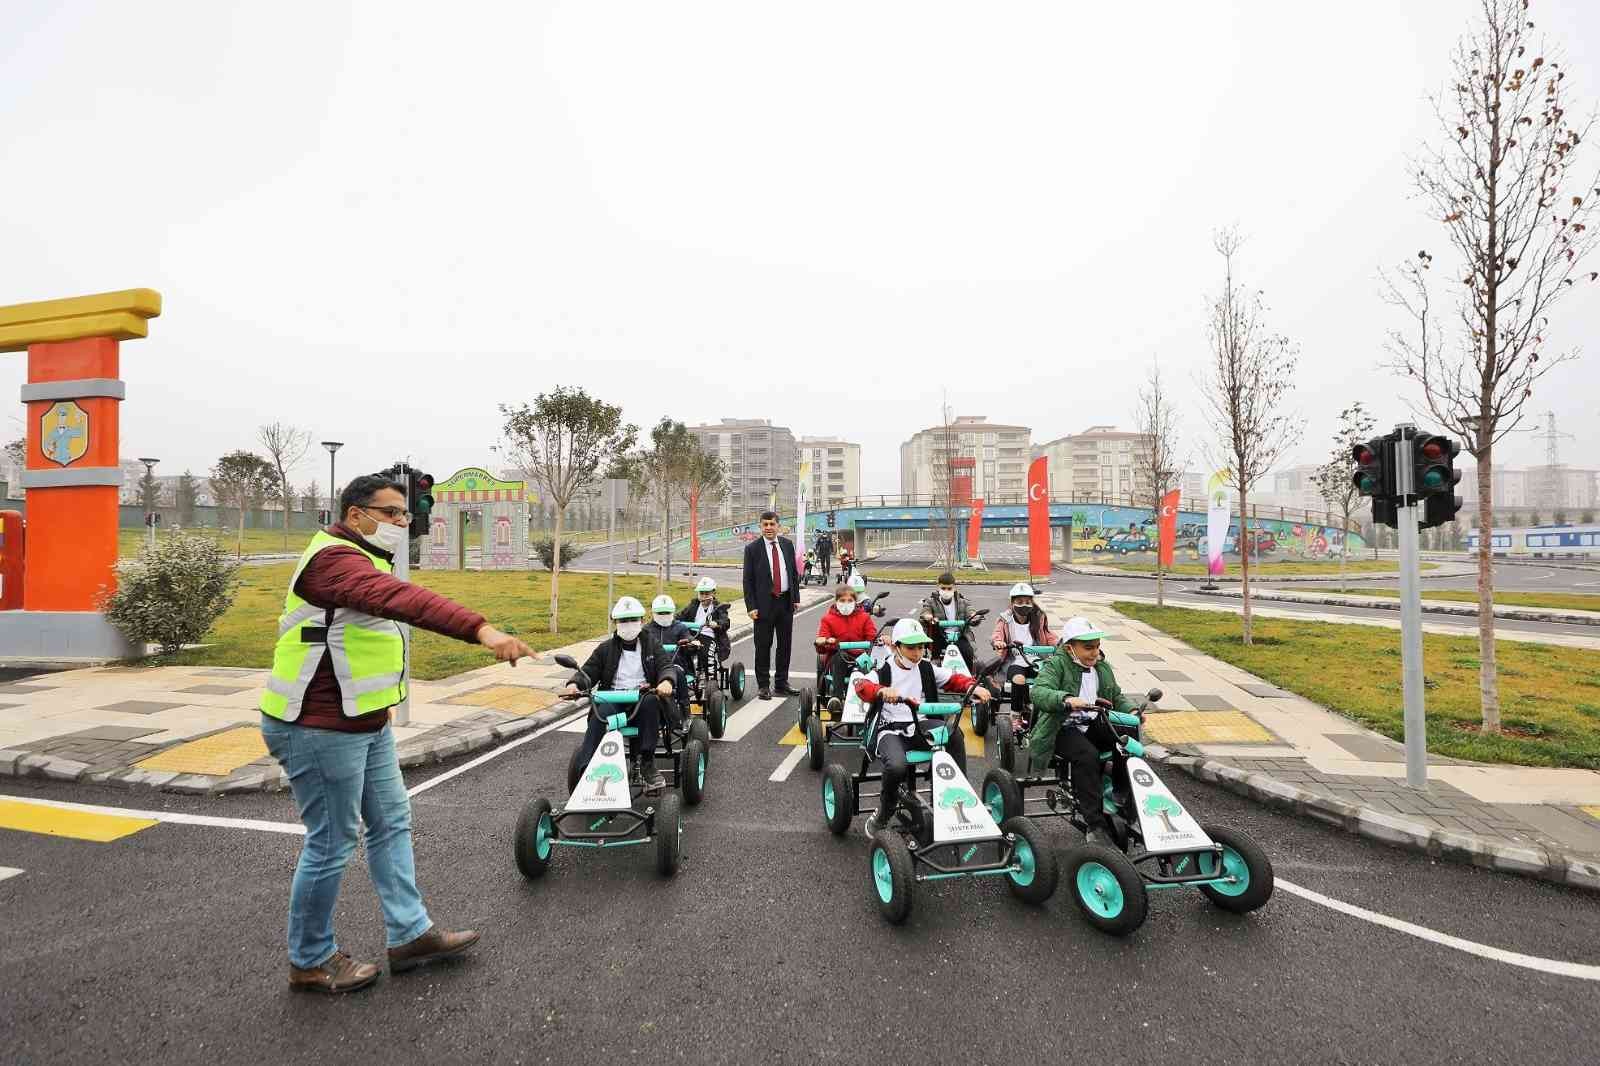 Şehitkamil trafik eğitim parkı’nda eğitimler sürecek #gaziantep